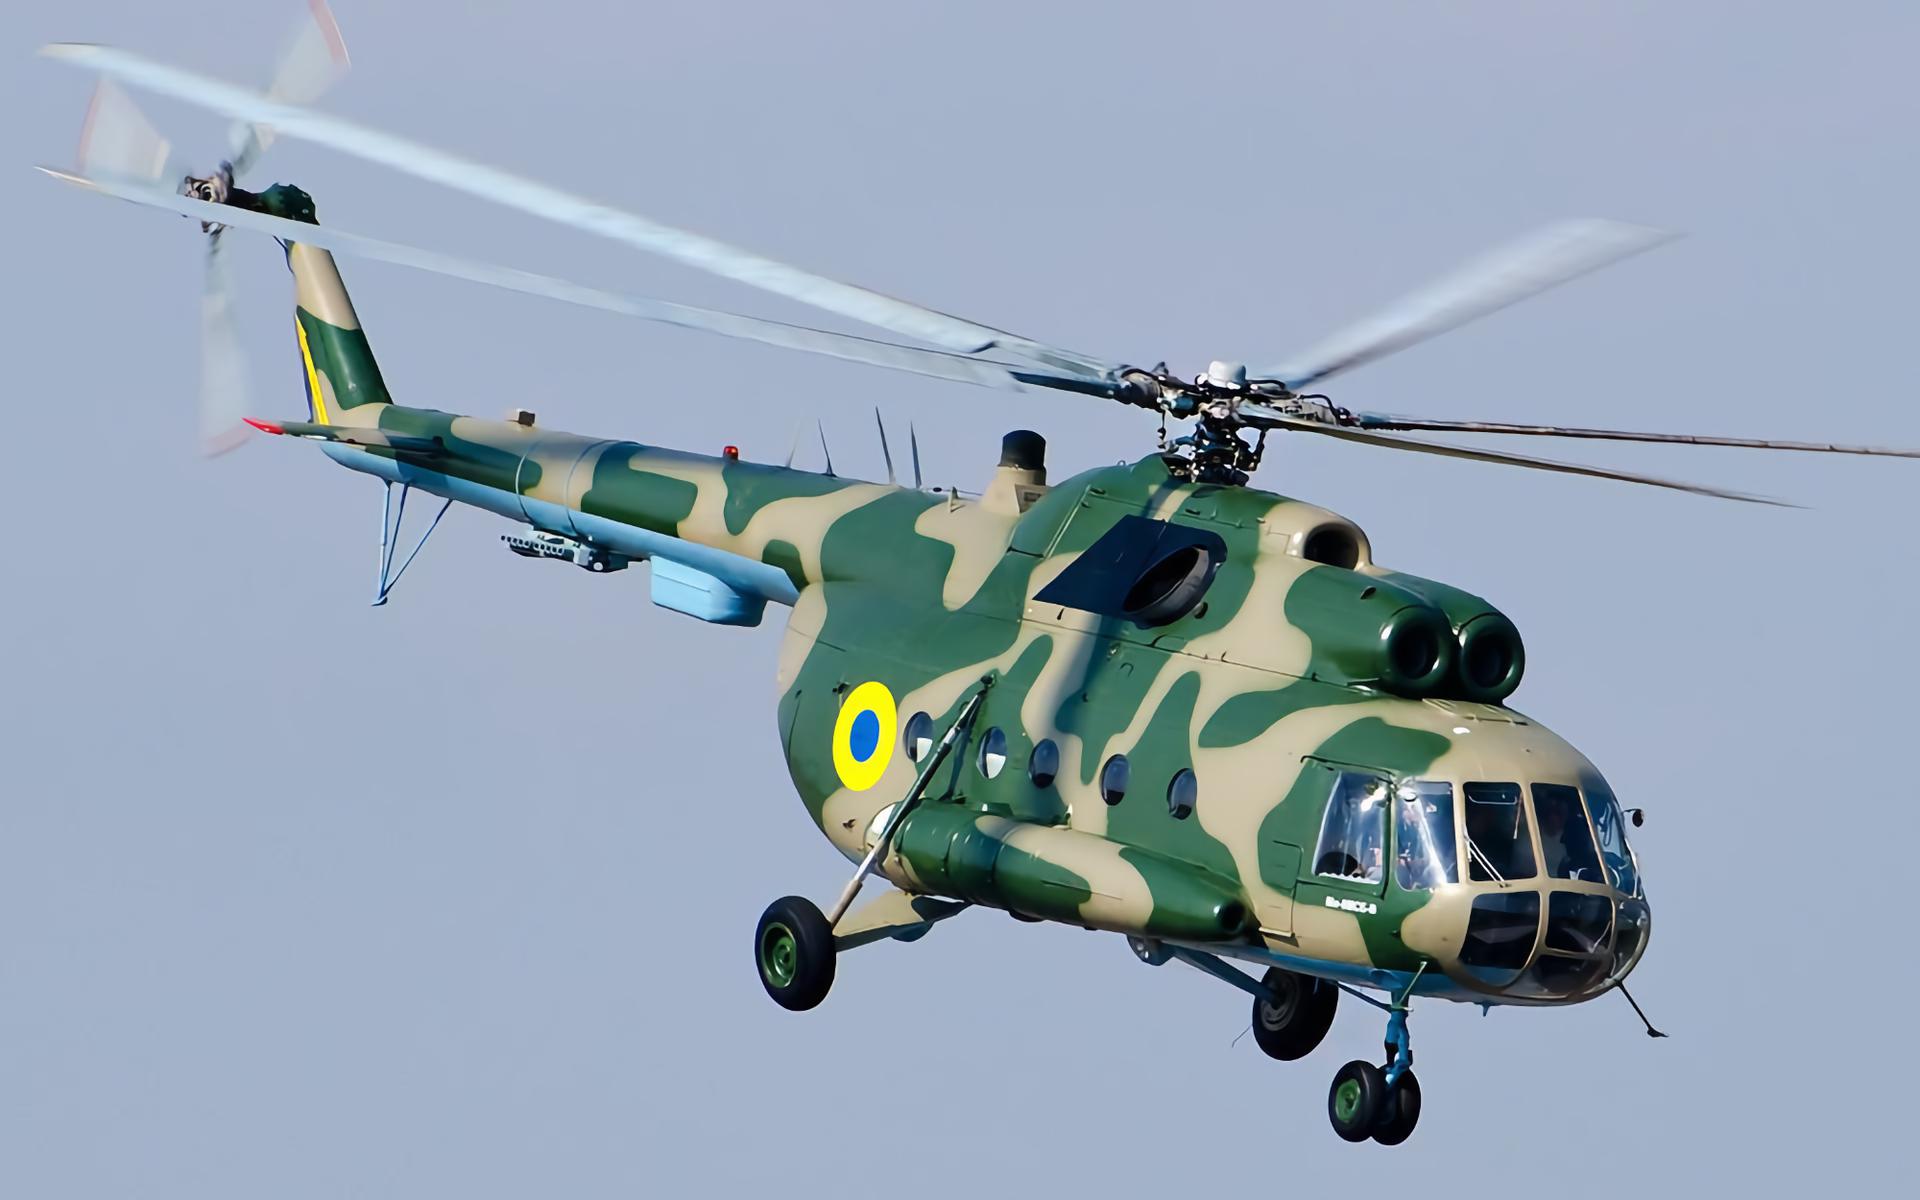 Helicópteros Mi-8 ucranianos atacan posiciones enemigas con la banda sonora de Danger Zone de la película Top Gun (vídeo)